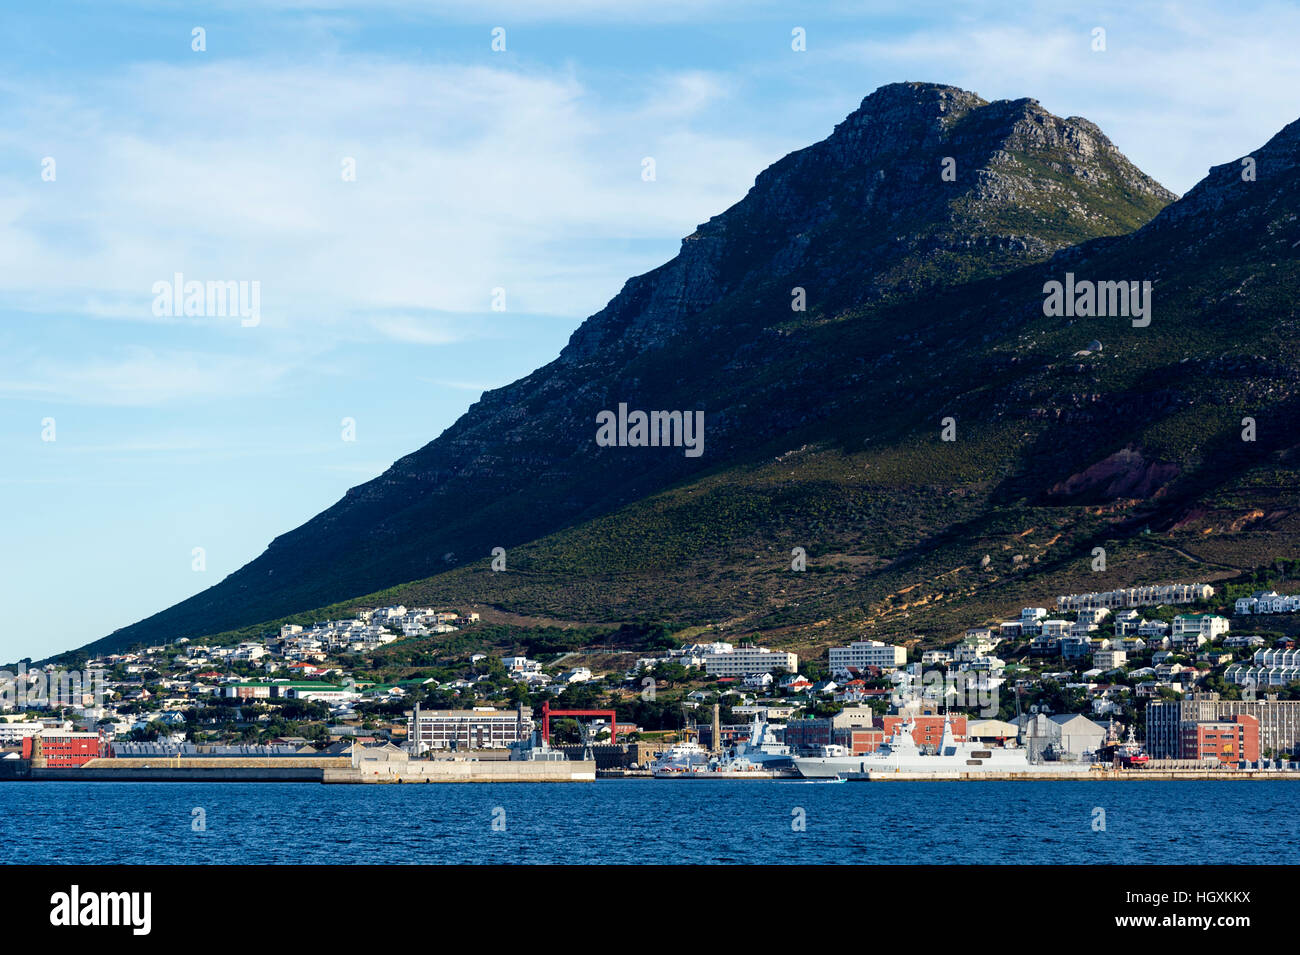 Una base navale e città di pescatori situato sotto una montagna. Foto Stock